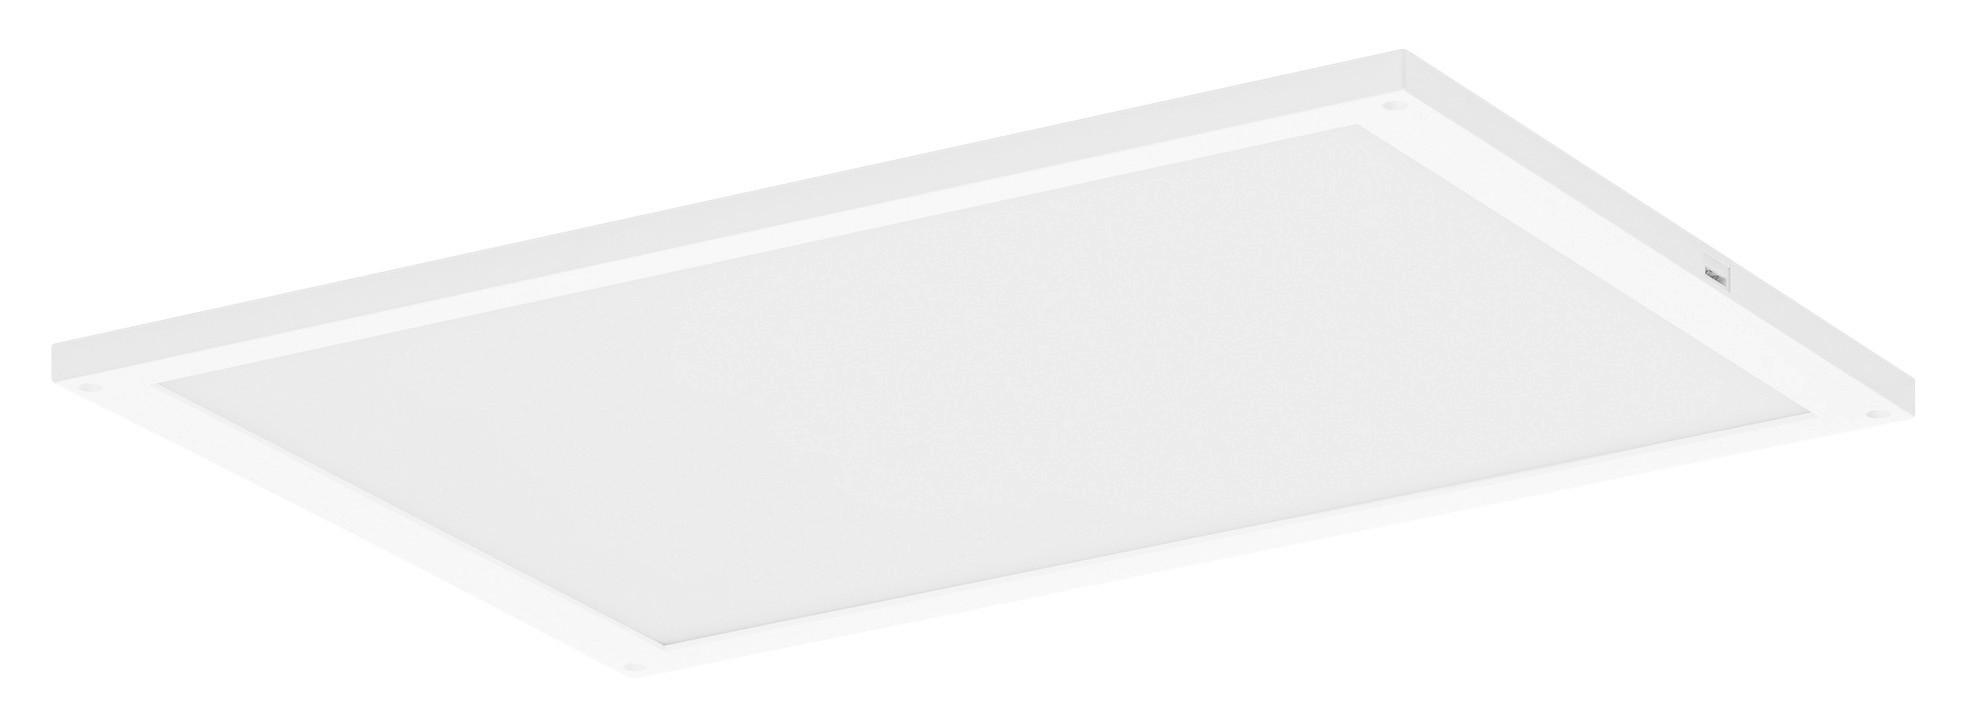 UNTERBAULEUCHTE Smart+ WiFi Undercabinet  - Weiß, Basics, Kunststoff/Metall (30/20/0,75cm) - Ledvance